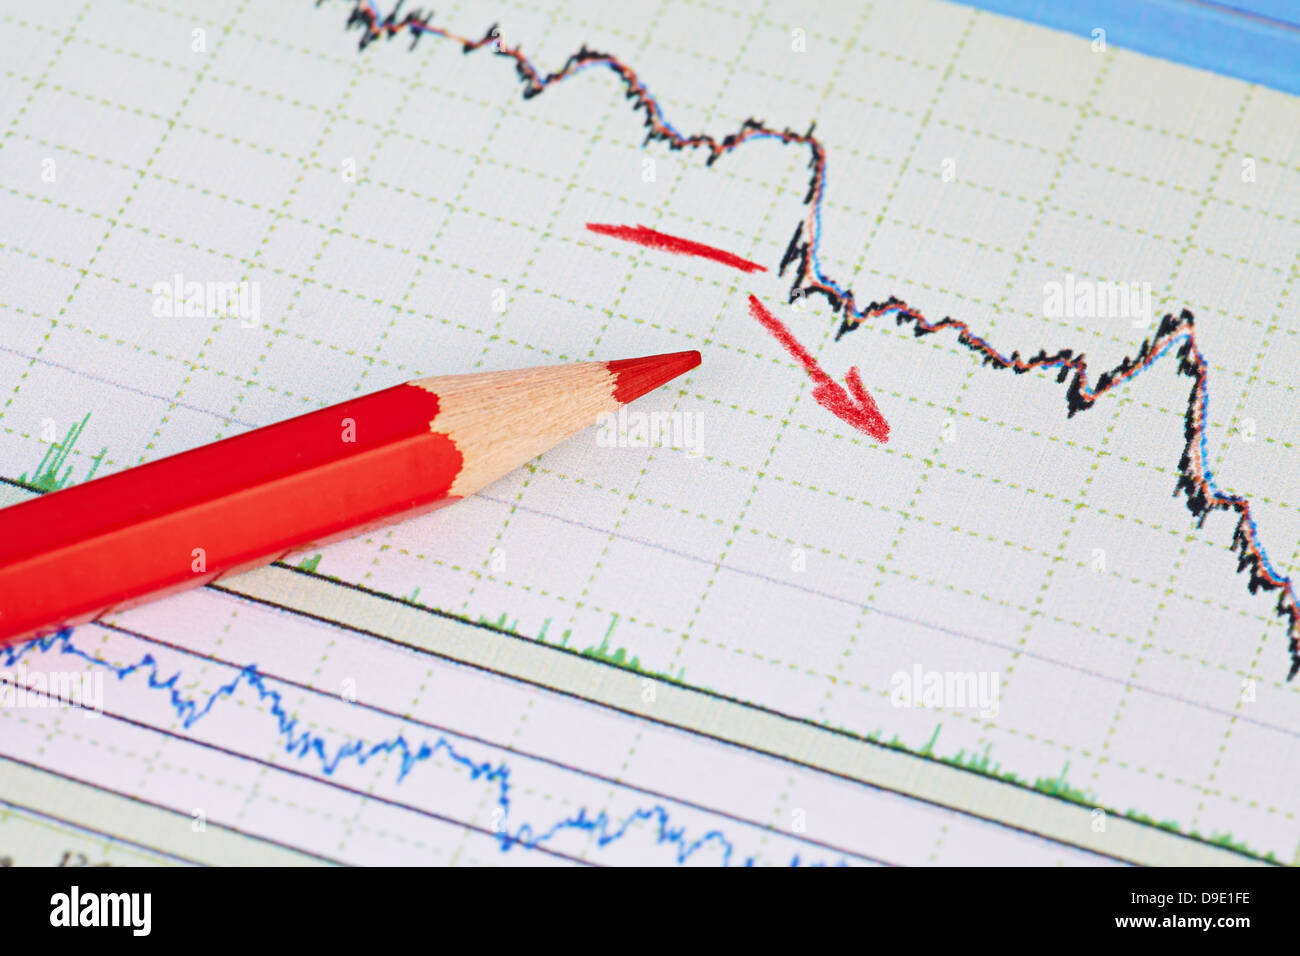 La baisse du marché financier concept graphique avec flèche rouge. Selective focus Banque D'Images